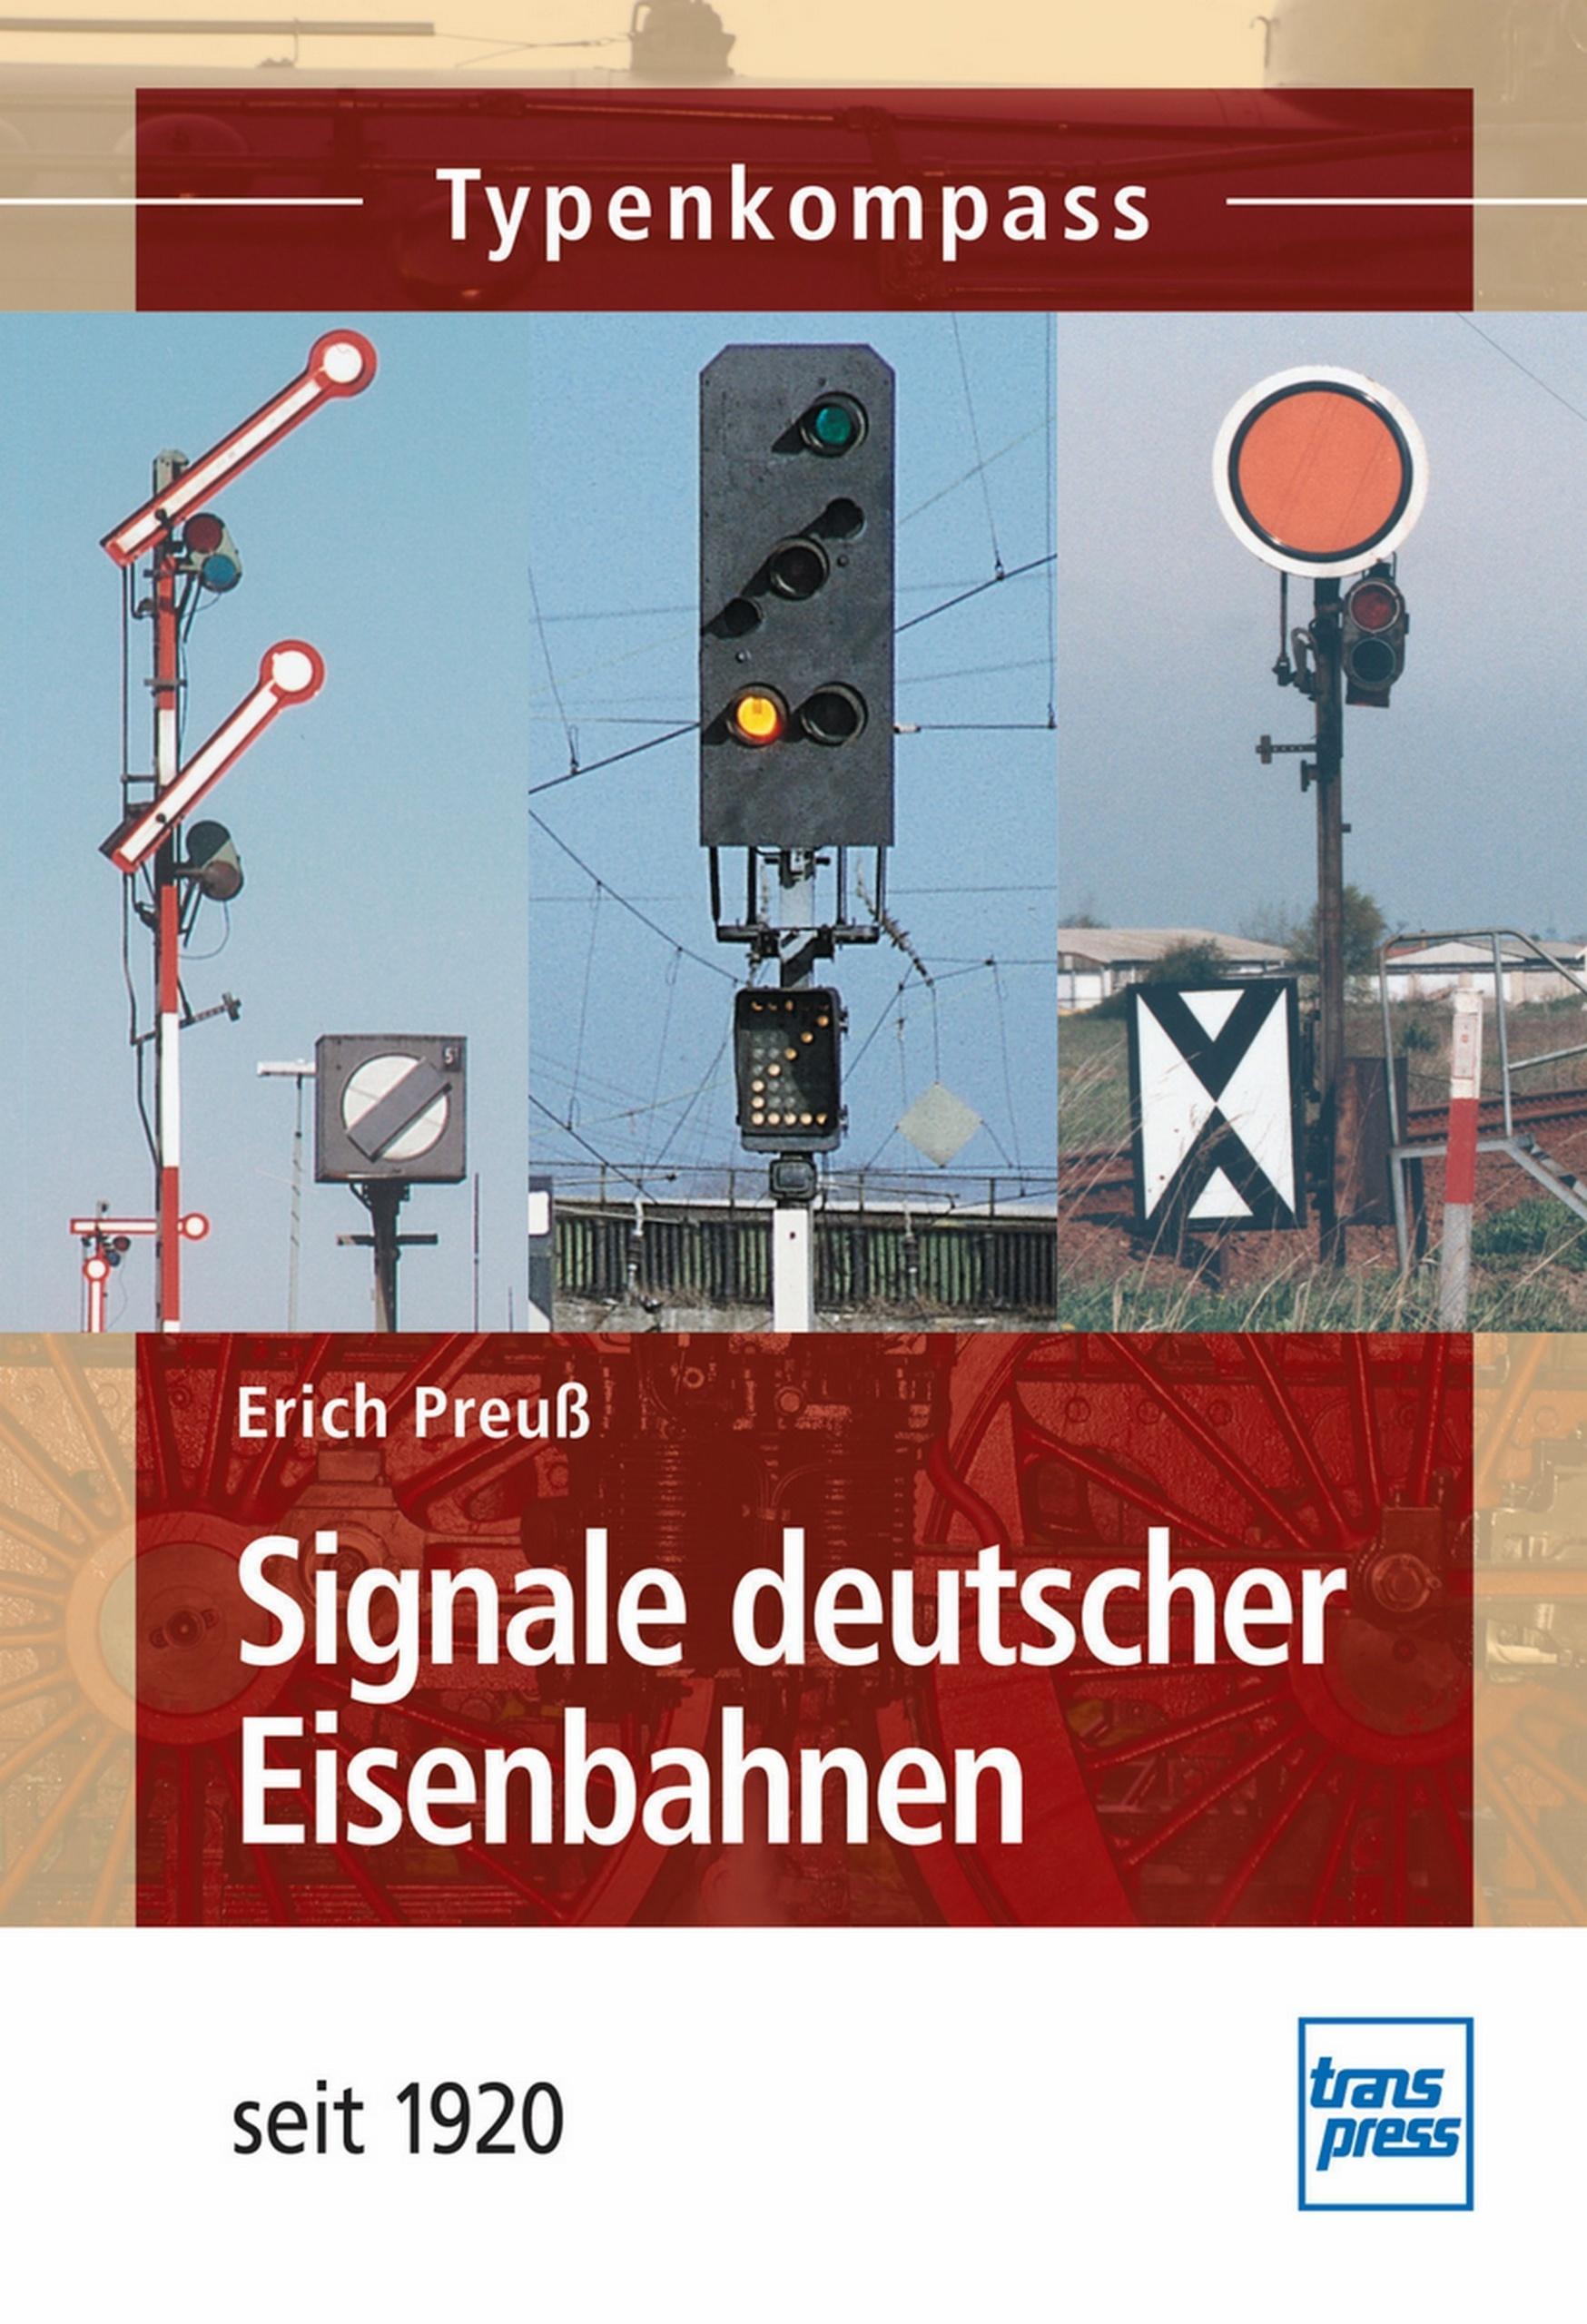 Signale der deutscher Eisenbahnen Signalanlagen Typenatlas Typenkompass Buch NEU 